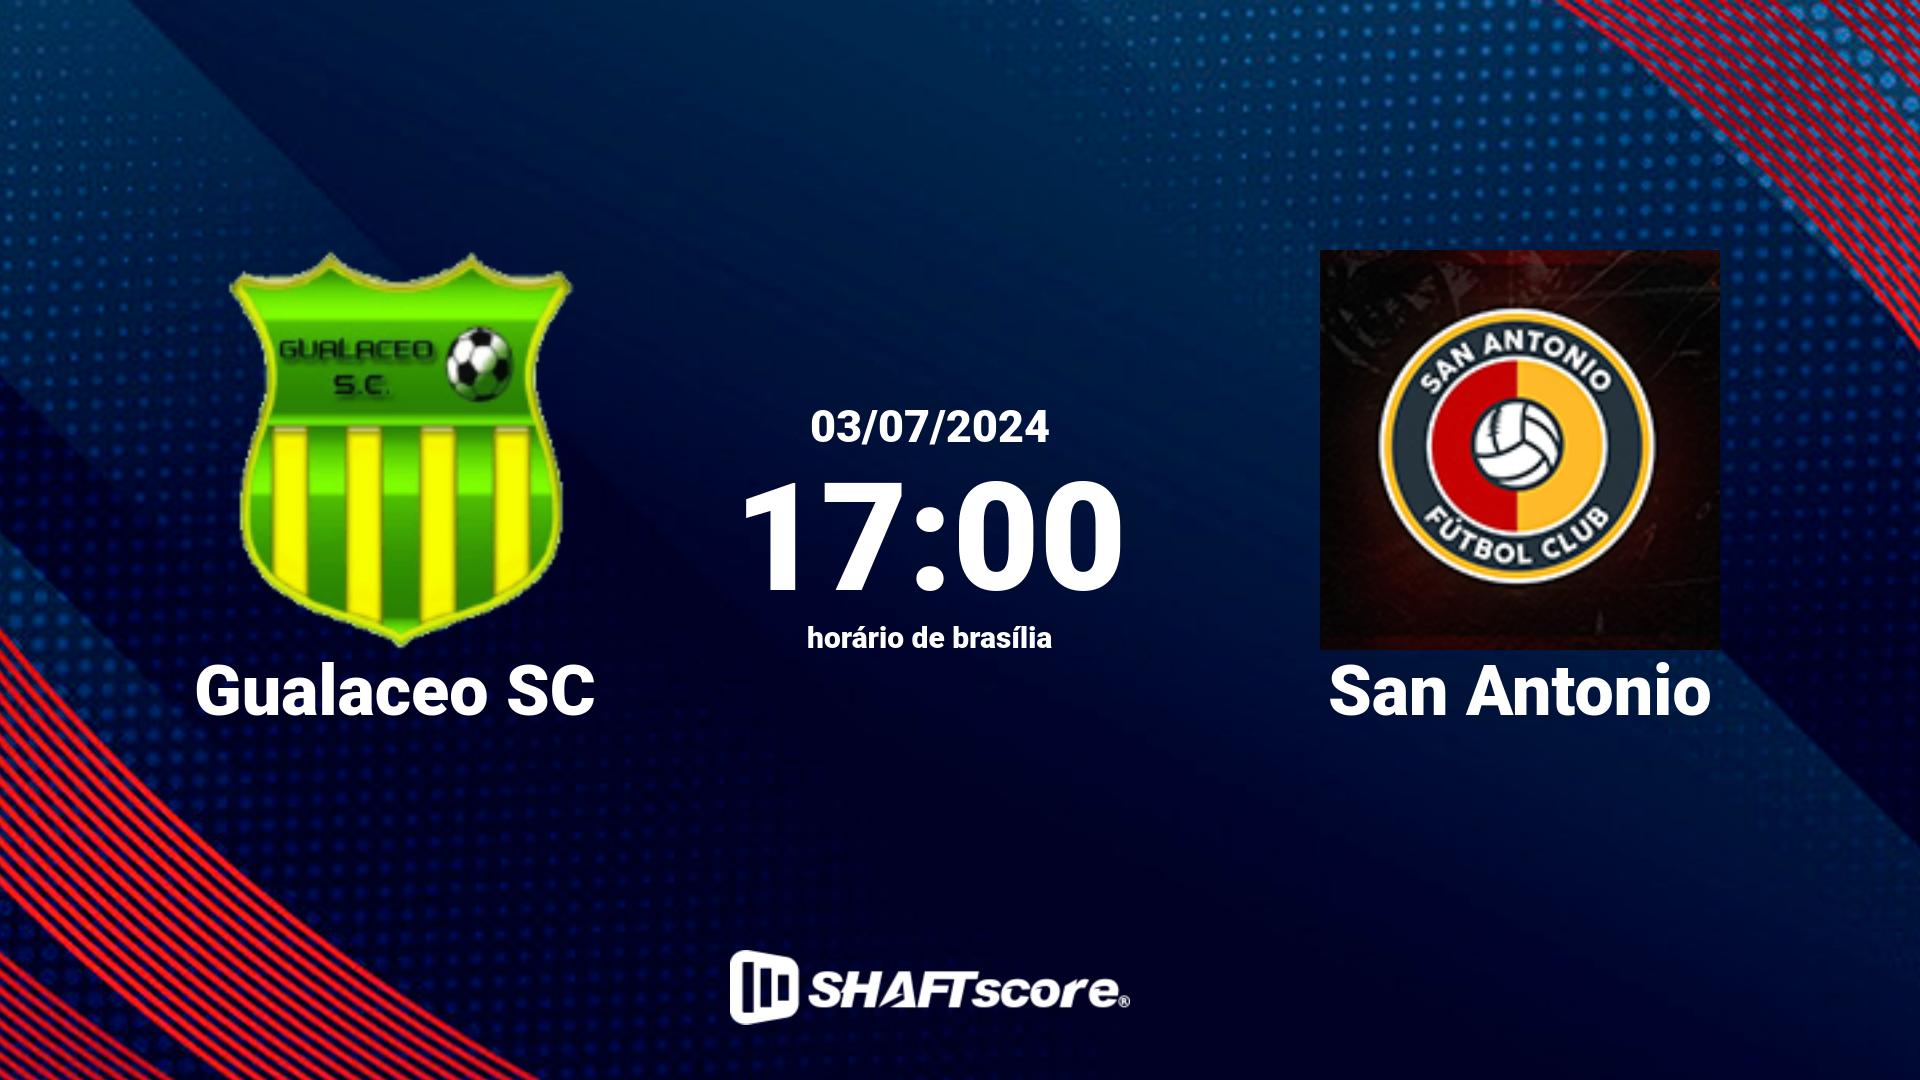 Estatísticas do jogo Gualaceo SC vs San Antonio 03.07 17:00